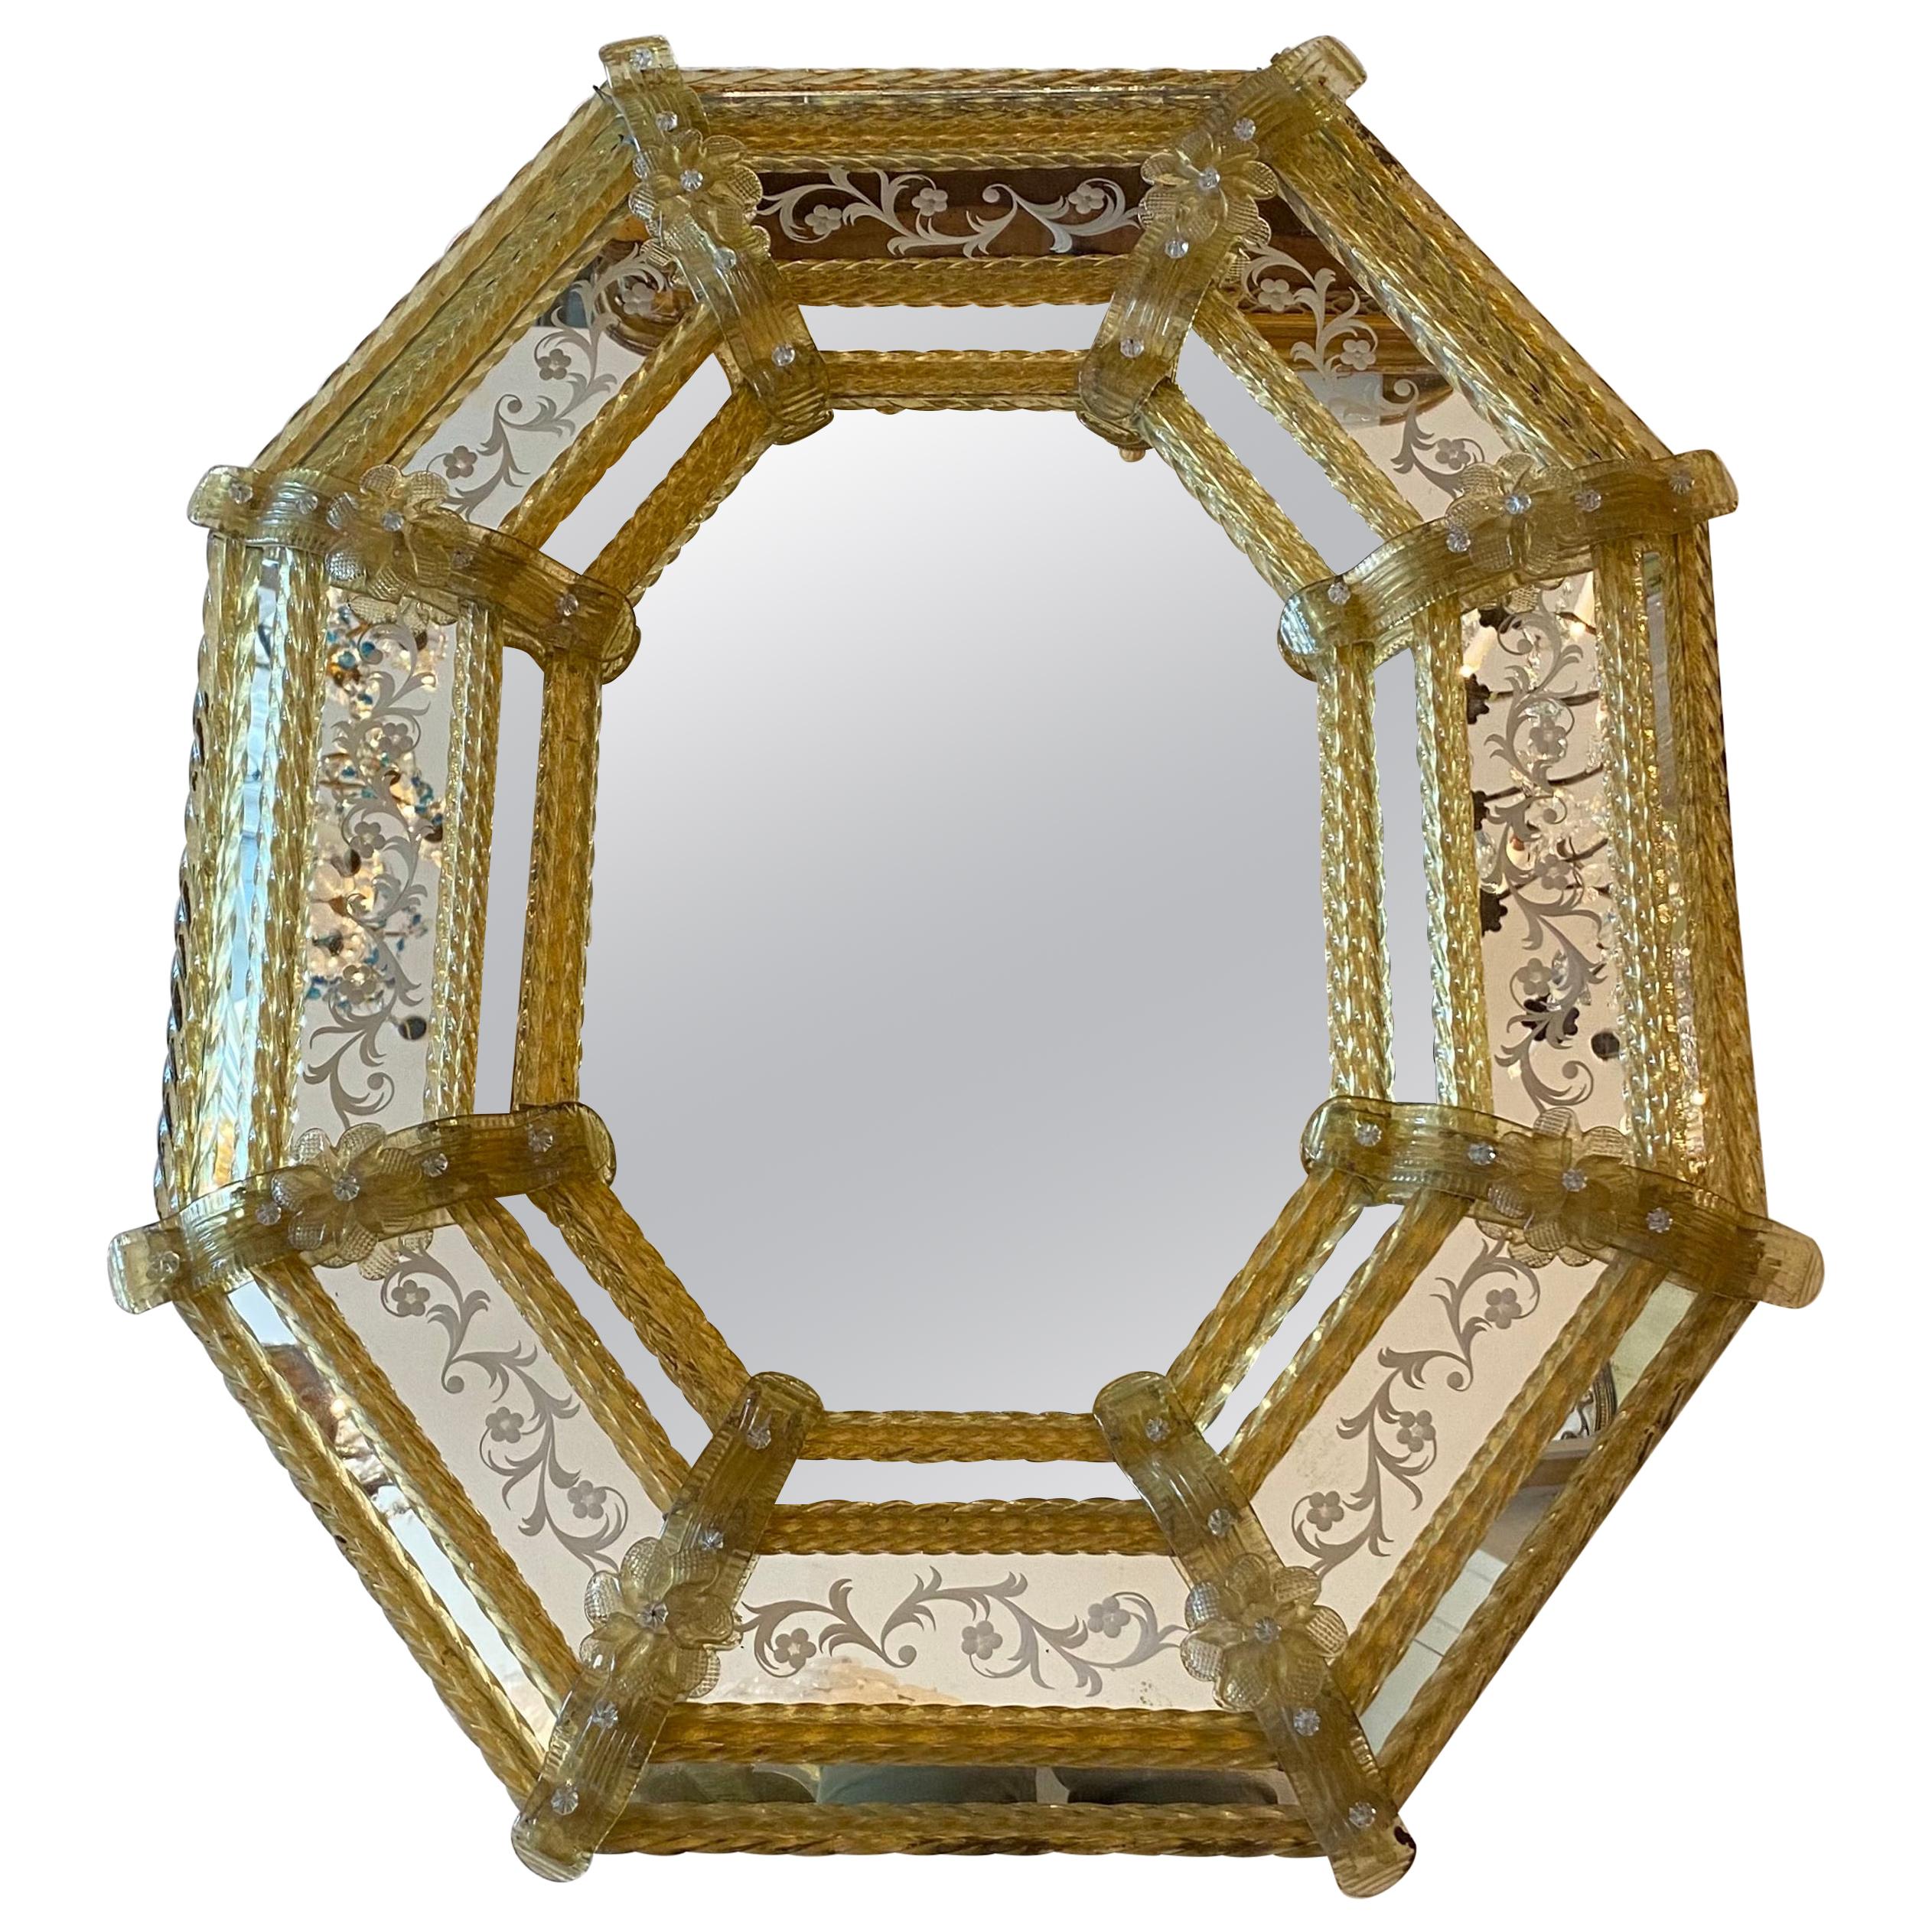 Venetian Oval Mirror